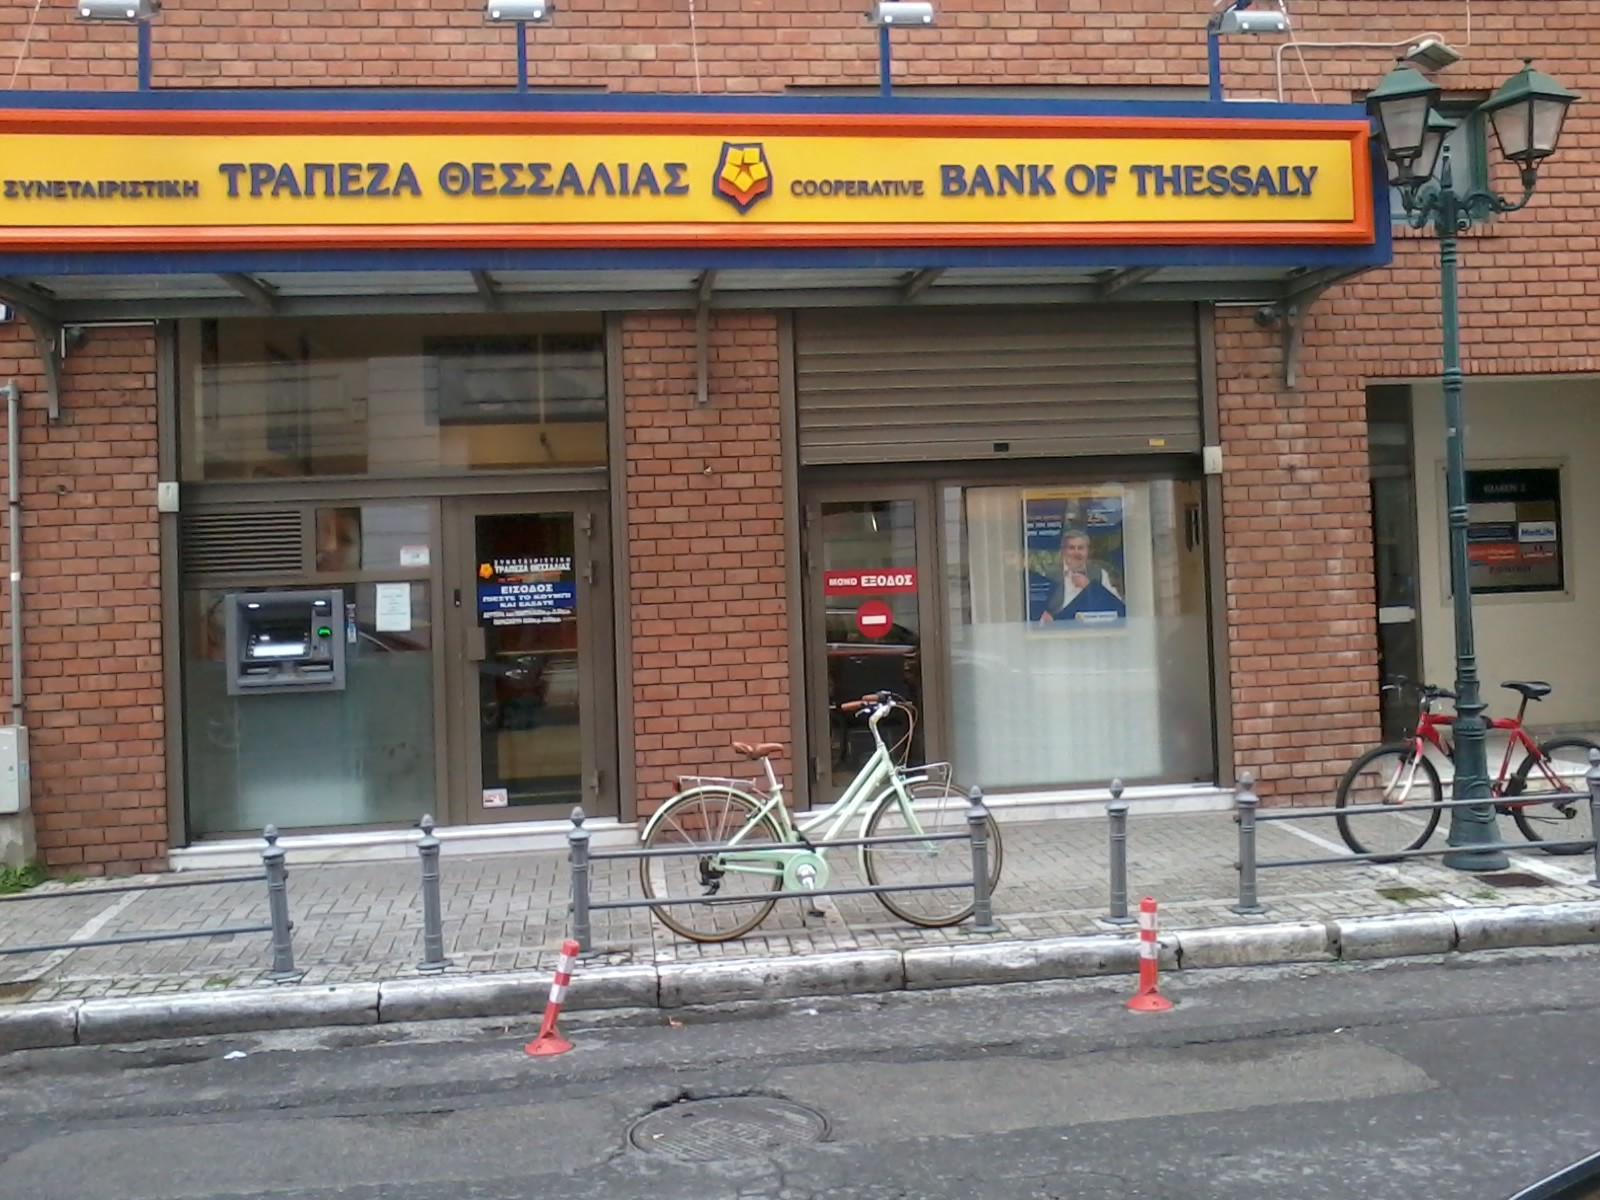 Η Τράπεζα Θεσσαλίας στο νέο Χρηματοδοτικό Πρόγραμμα “Business Growth Fund”